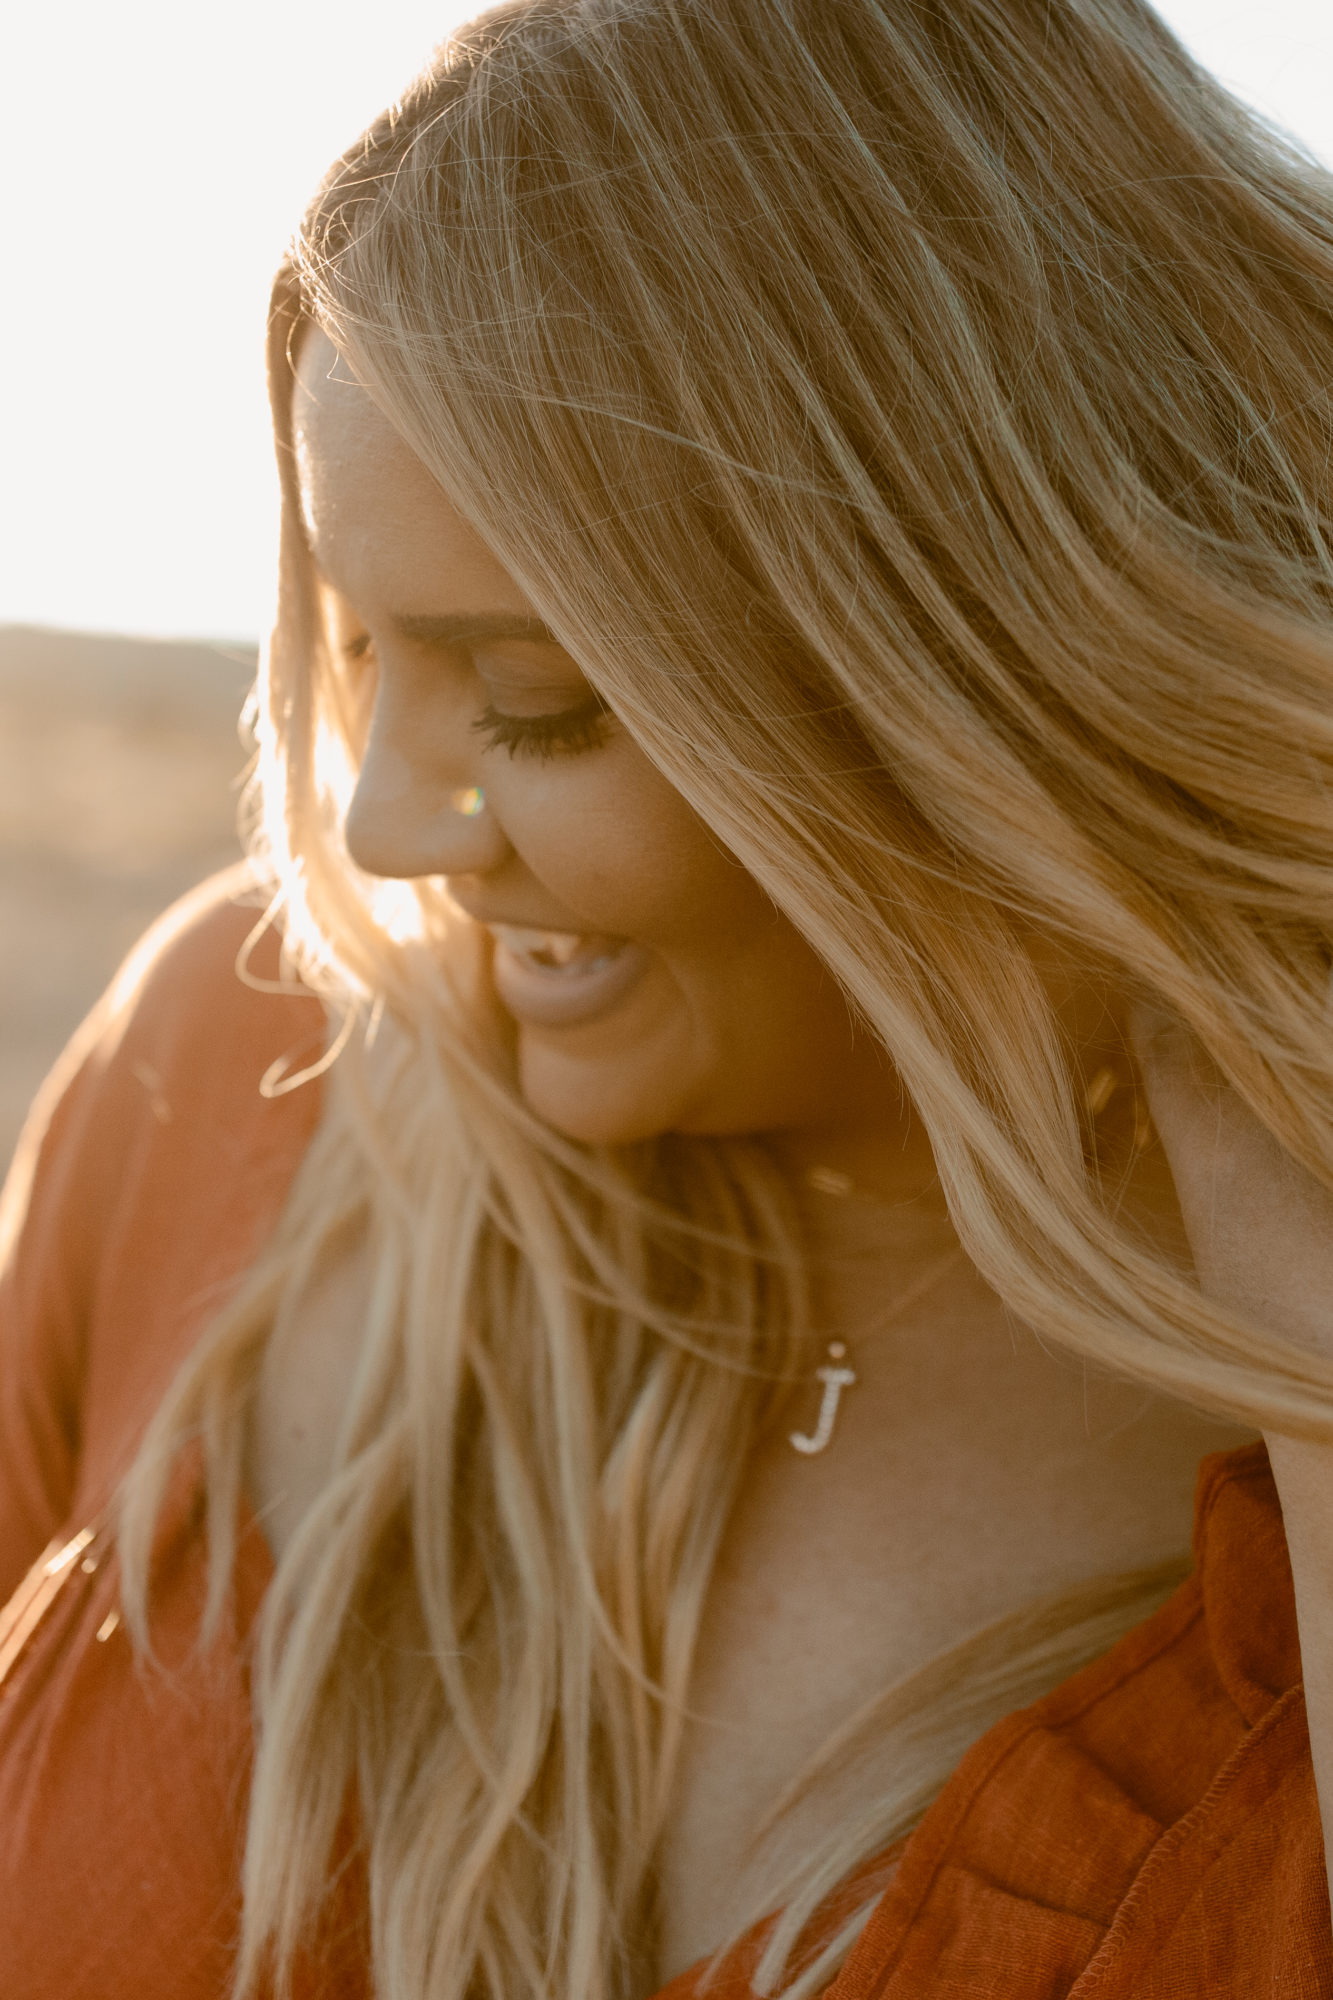 Woman smiling during desert photoshoot